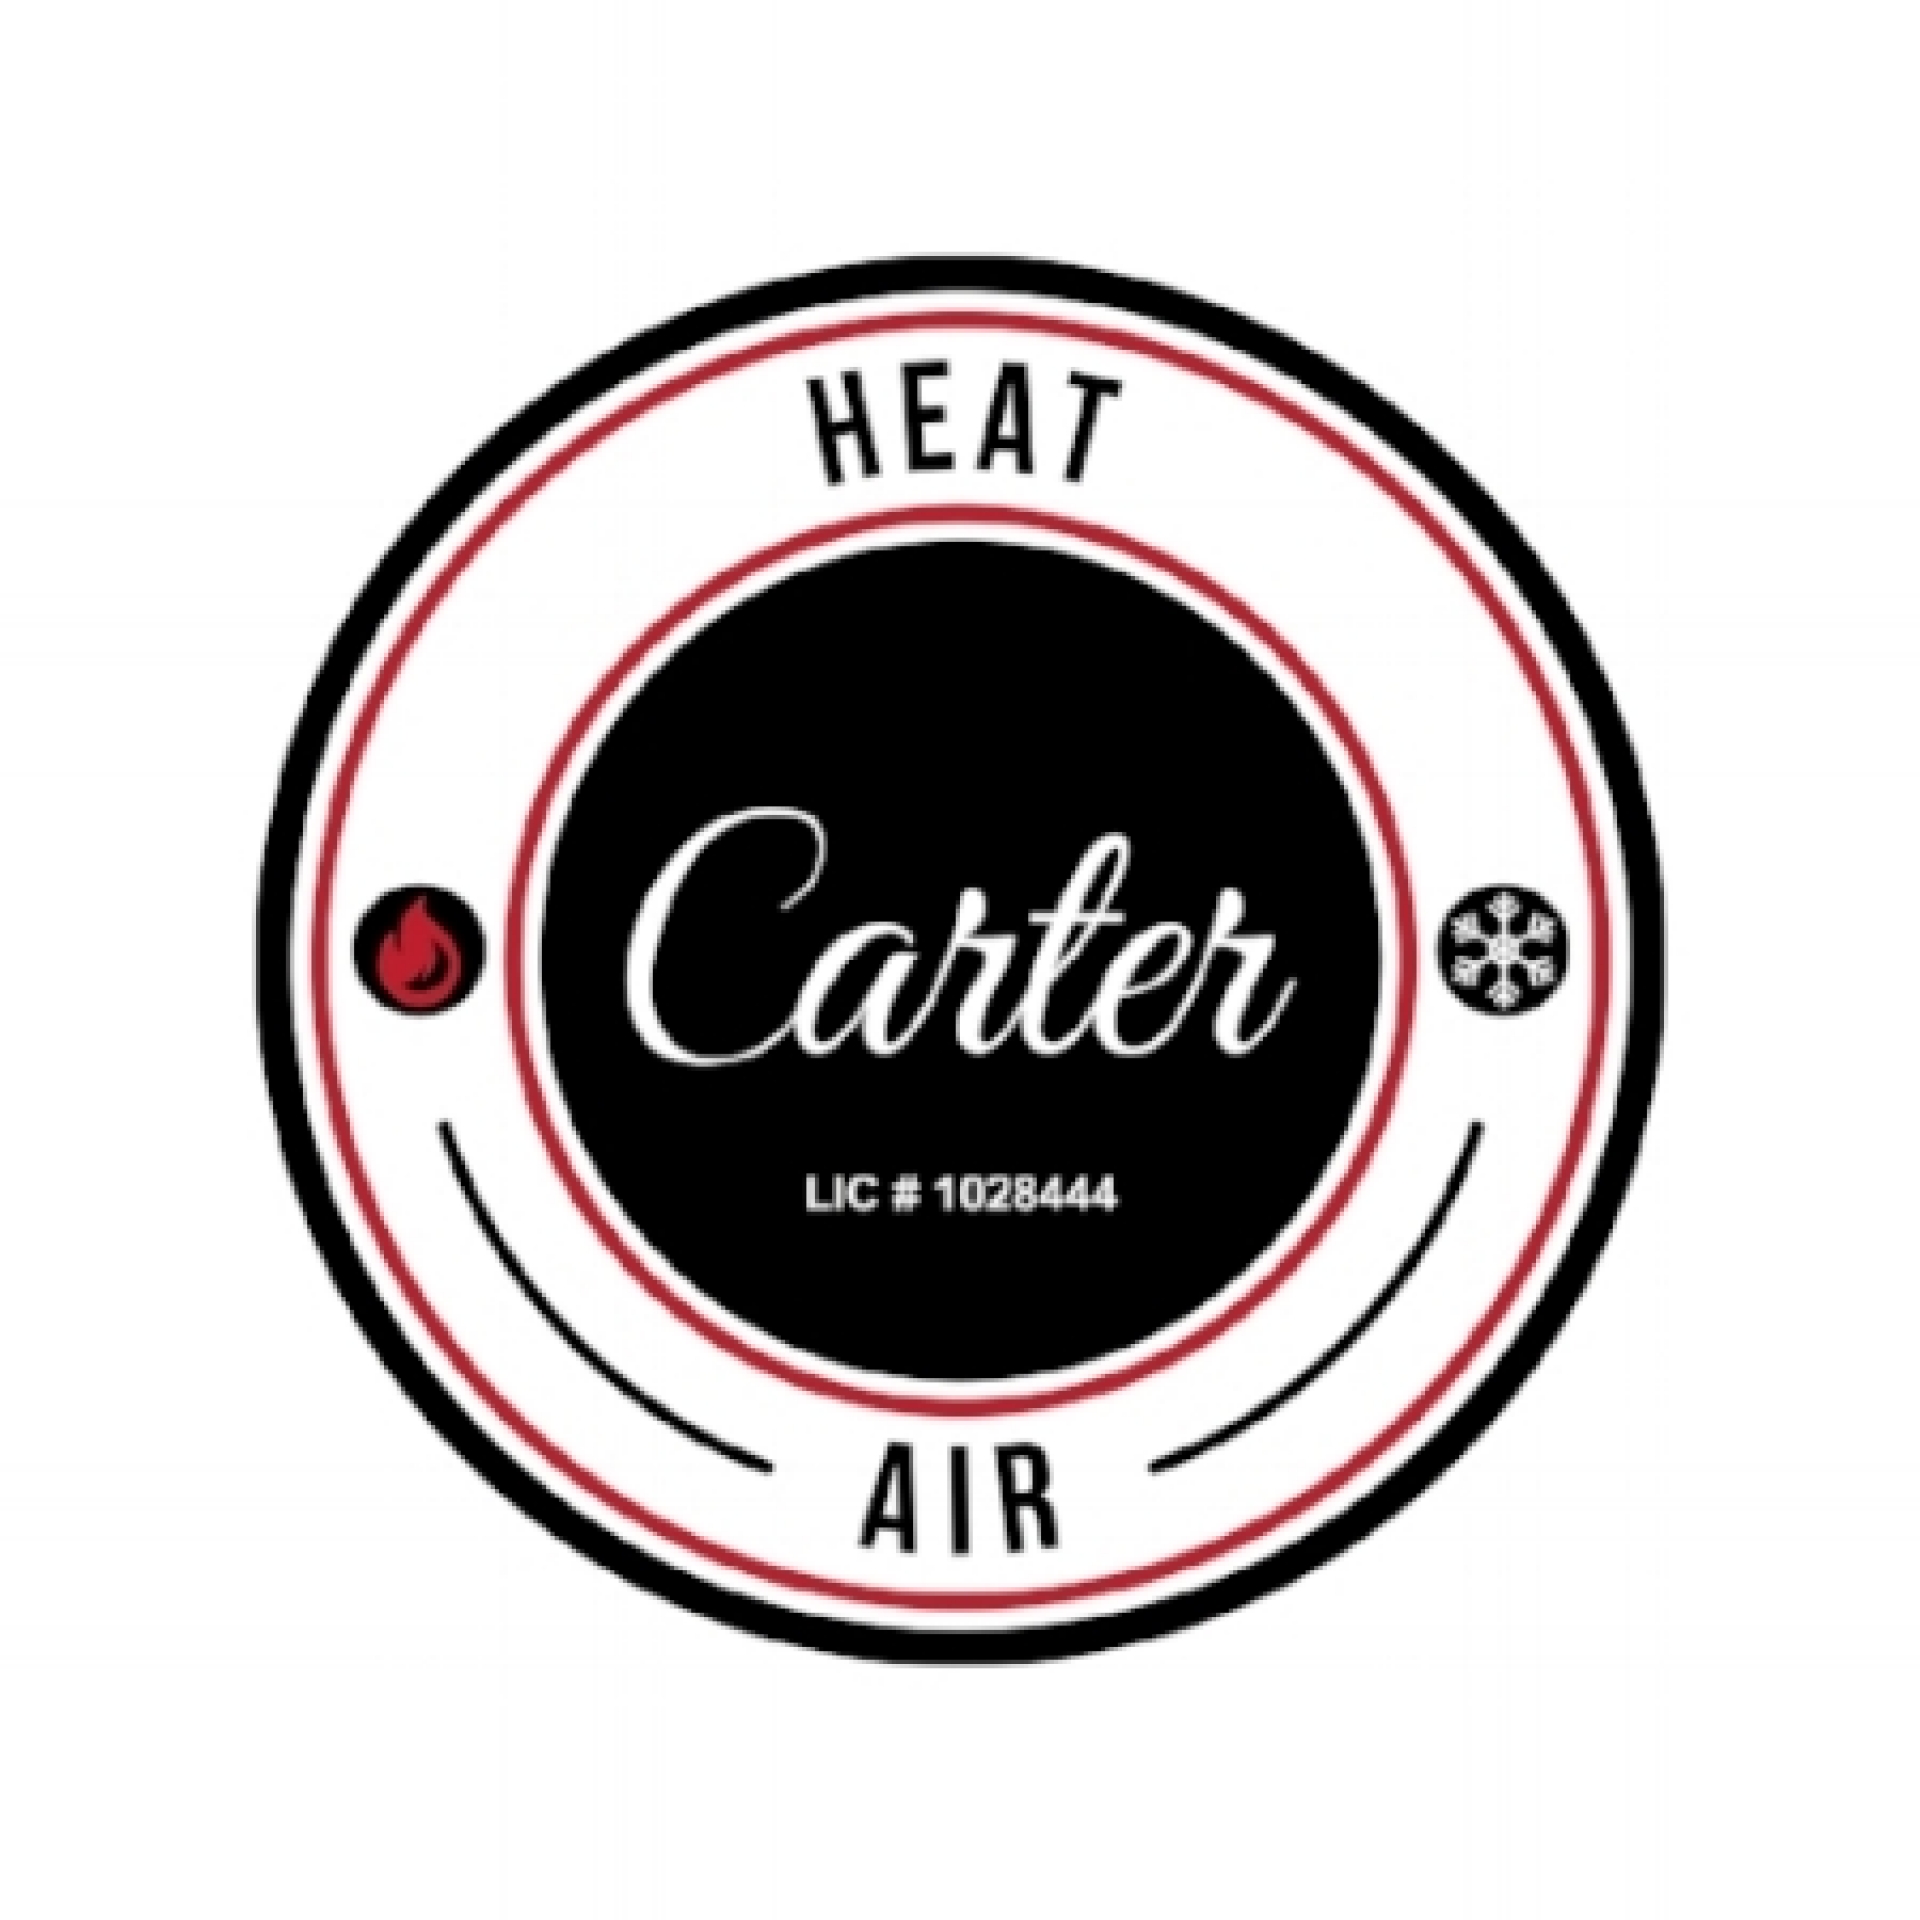 Carter Heat & Air company logo